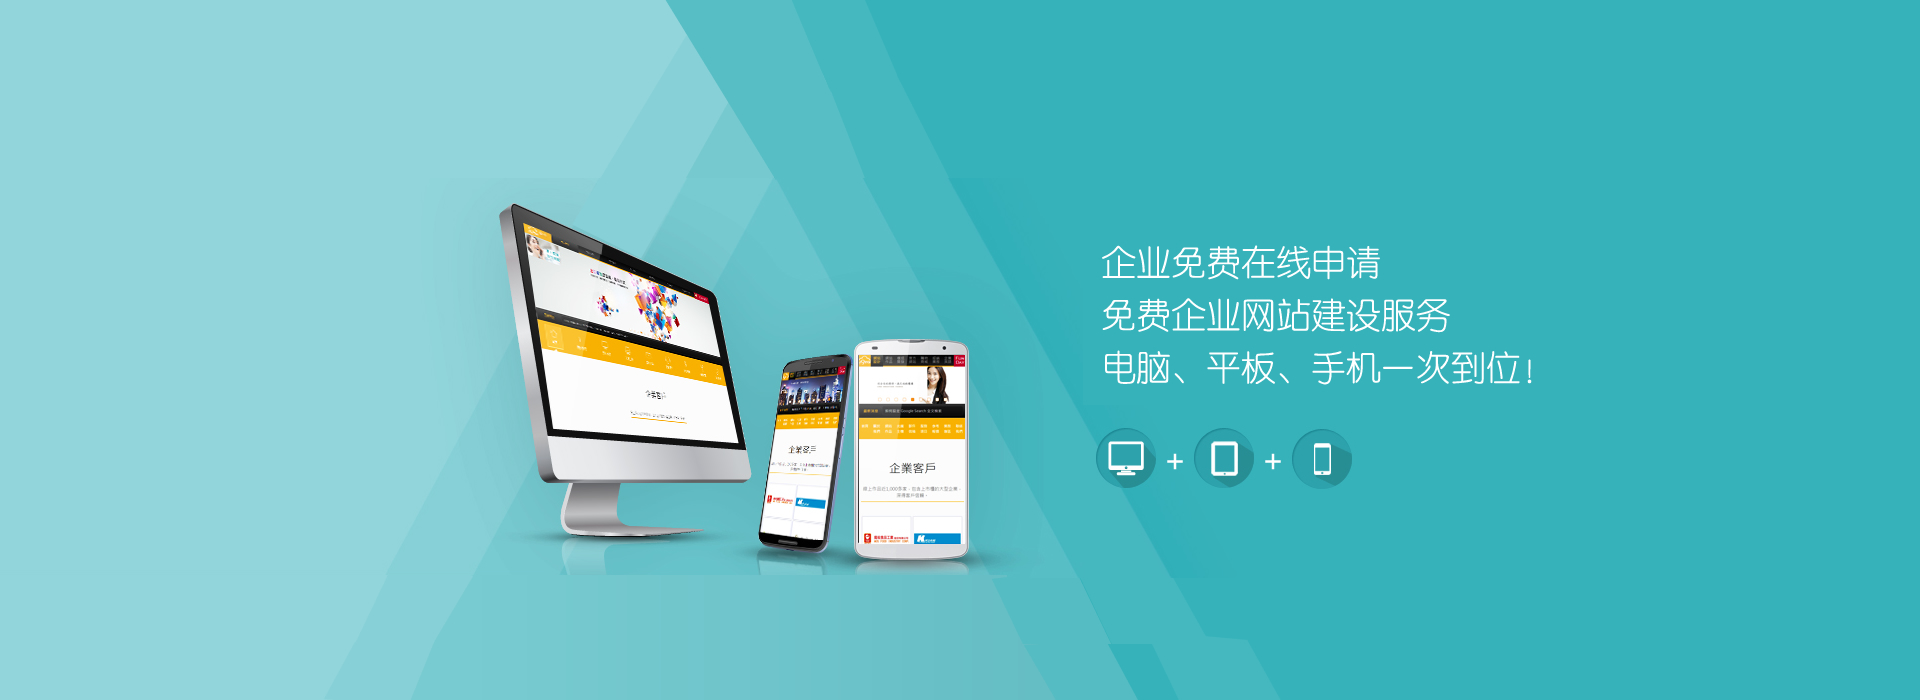 广州八羊广告有限公司网站建设